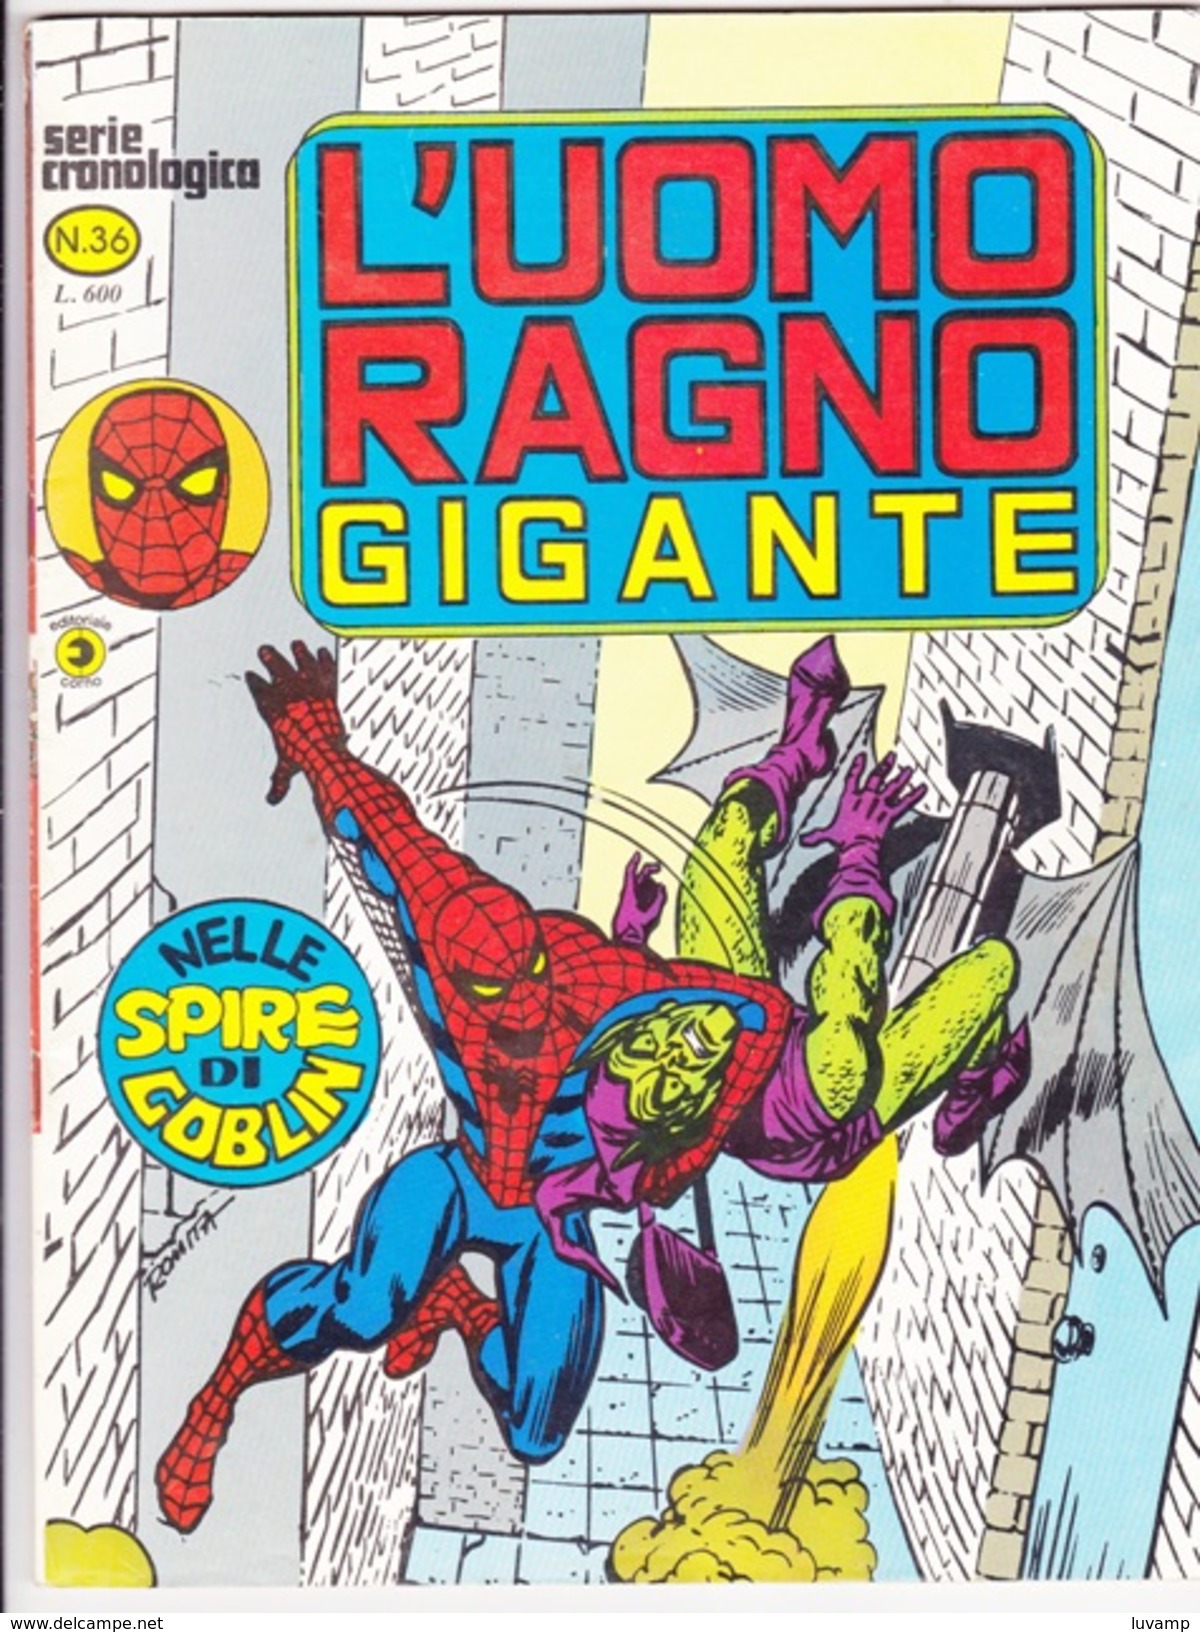 L'UOMO RAGNO GIGANTE -Serie Cronologica - Editore CORNO -N. 36 (240912) - Spider Man